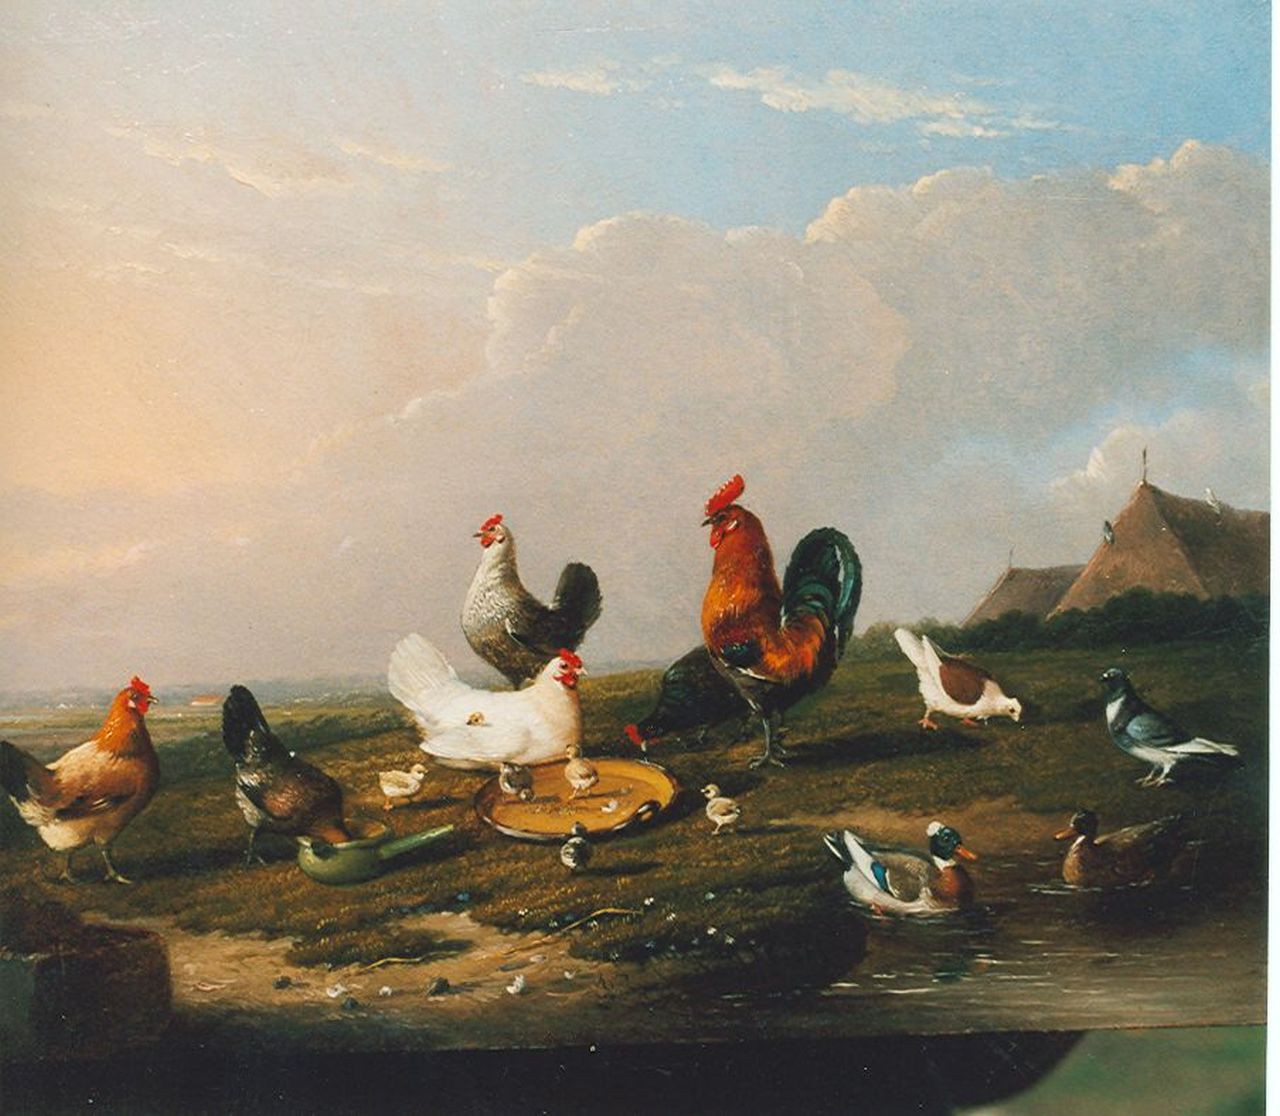 Severdonck F. van | Frans van Severdonck, Poultry in a landscape, oil on panel 17.7 x 24.1 cm, signed l.l. and dated 1869